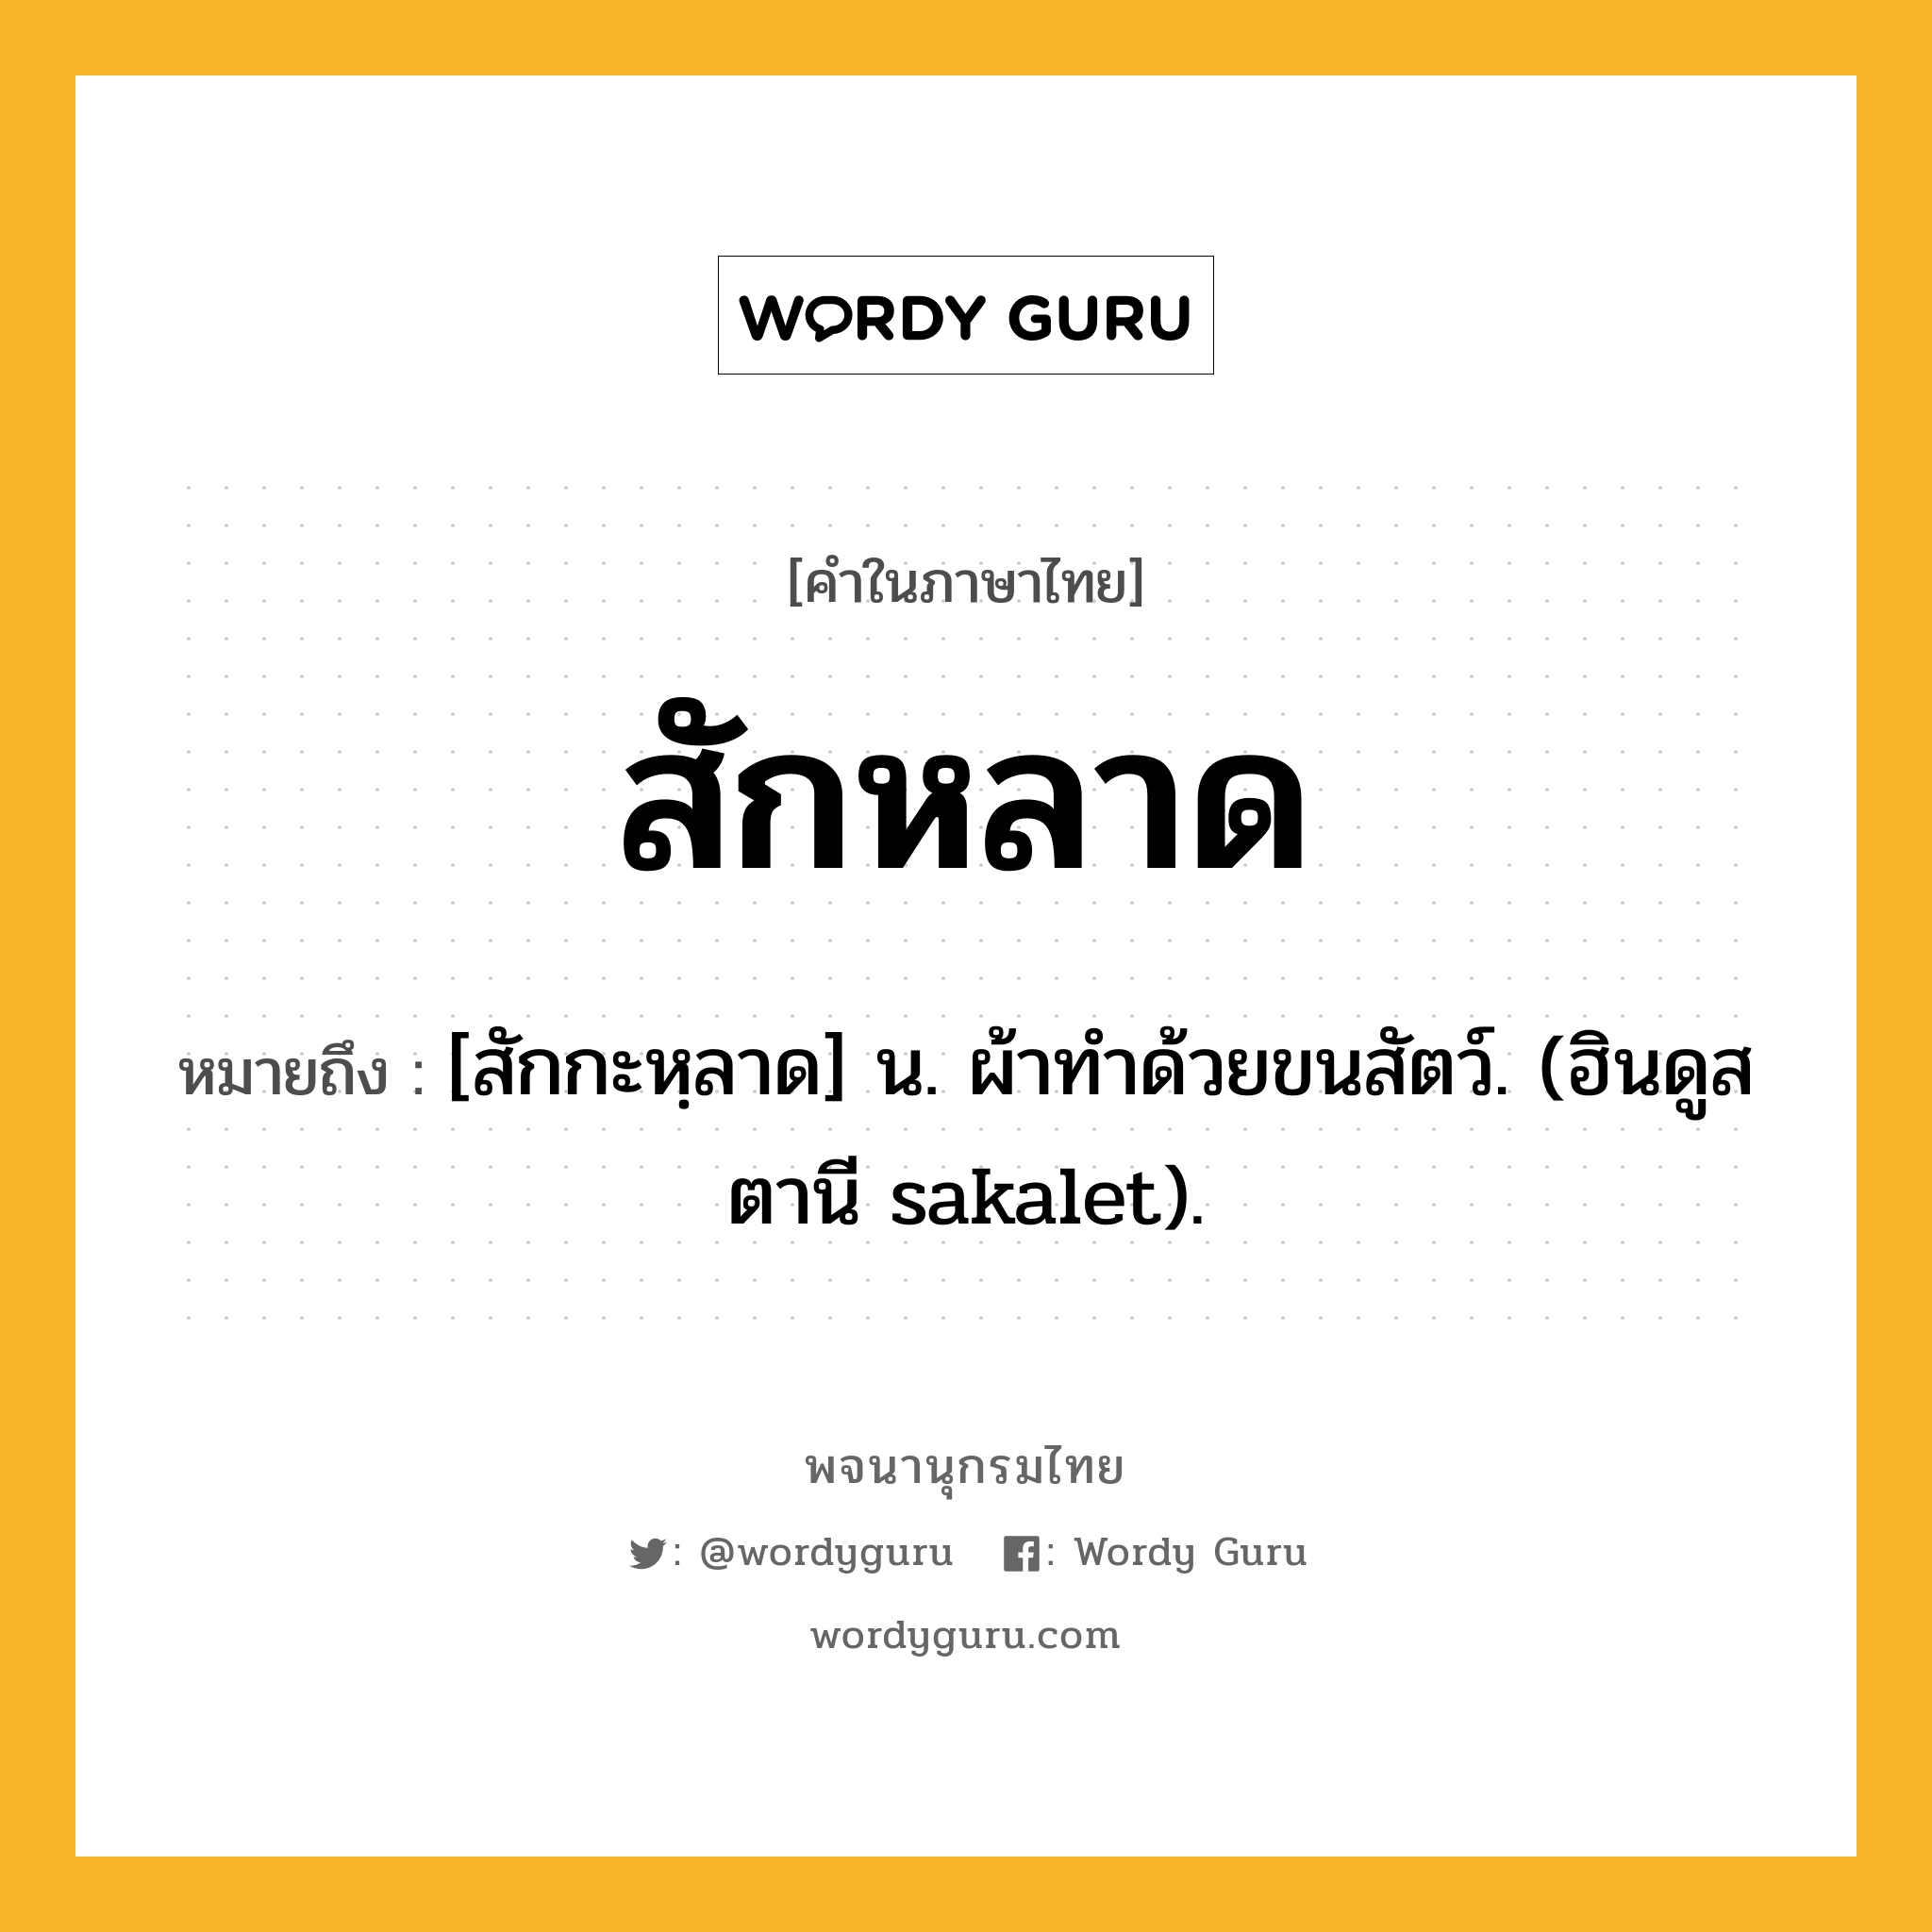 สักหลาด ความหมาย หมายถึงอะไร?, คำในภาษาไทย สักหลาด หมายถึง [สักกะหฺลาด] น. ผ้าทําด้วยขนสัตว์. (ฮินดูสตานี sakalet).